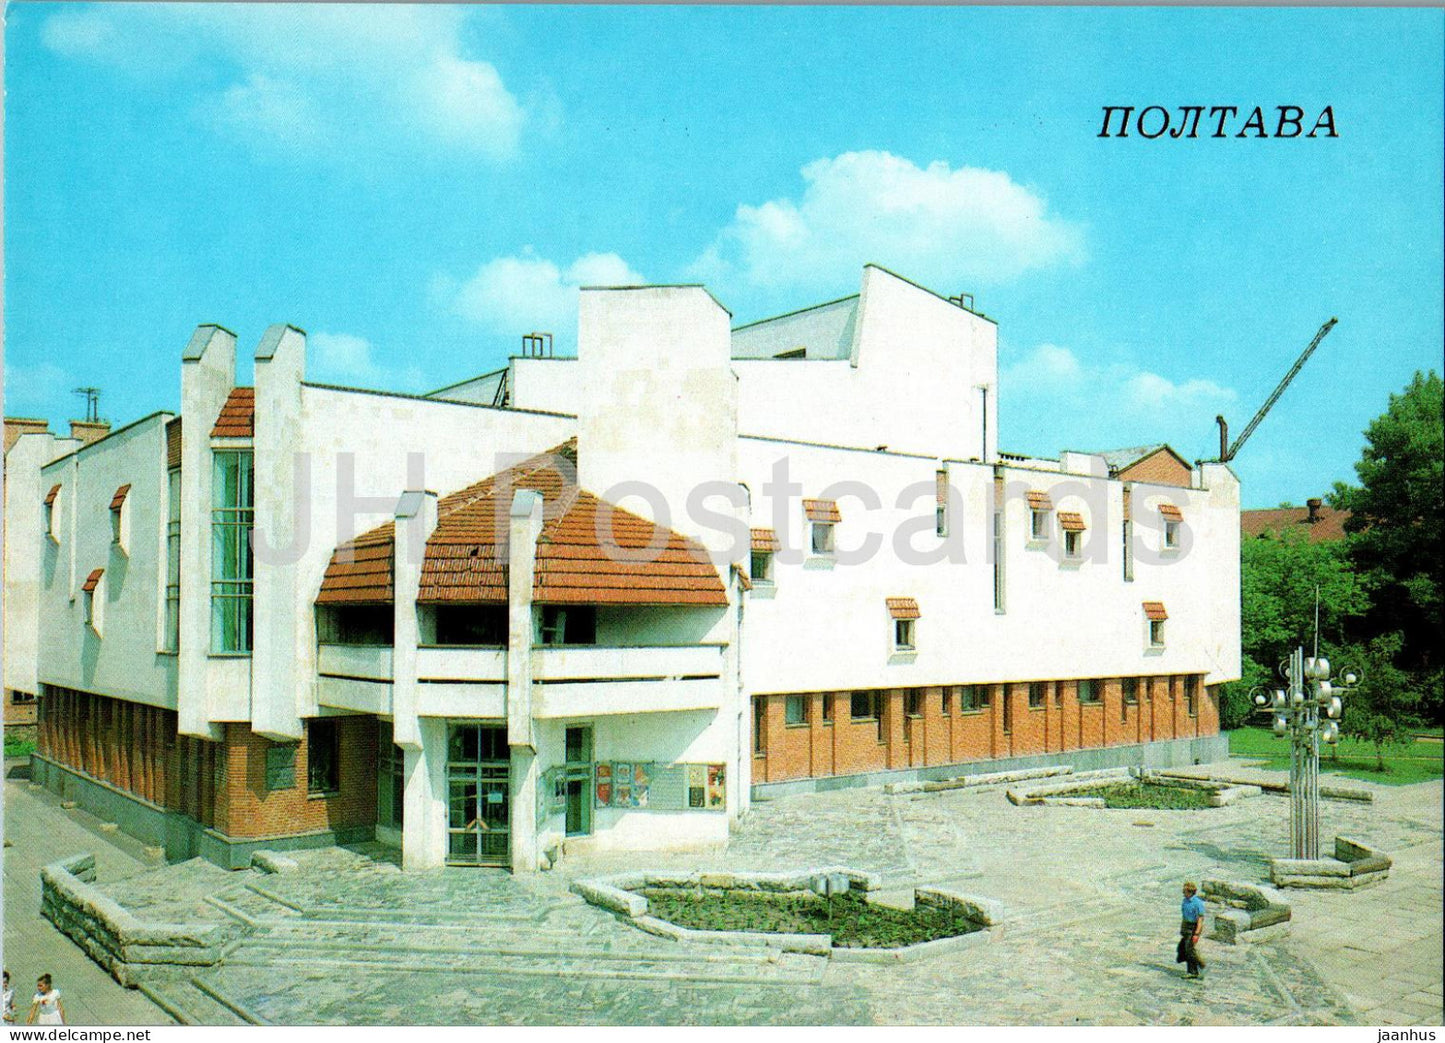 Poltava - Regional Puppet Theatre - 1988 - Ukraine USSR - unused